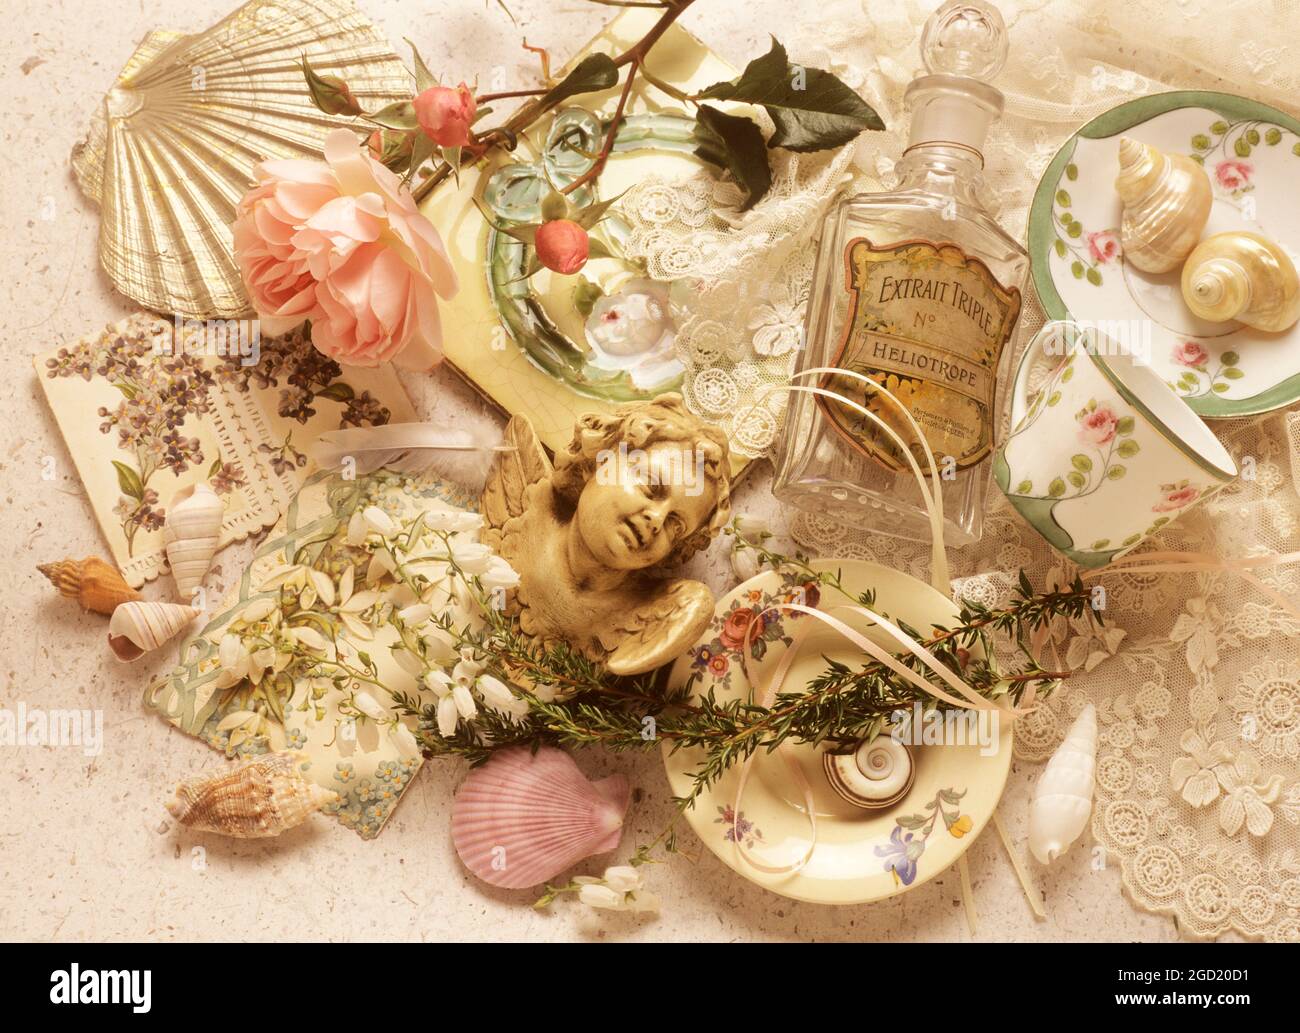 botanik, Stillleben aus antiker Spitze und Gegenstände mit Rose, ZUSÄTZLICHE-RIGHTS-CLEARANCE-INFO-NOT-AVAILABLE Stockfoto